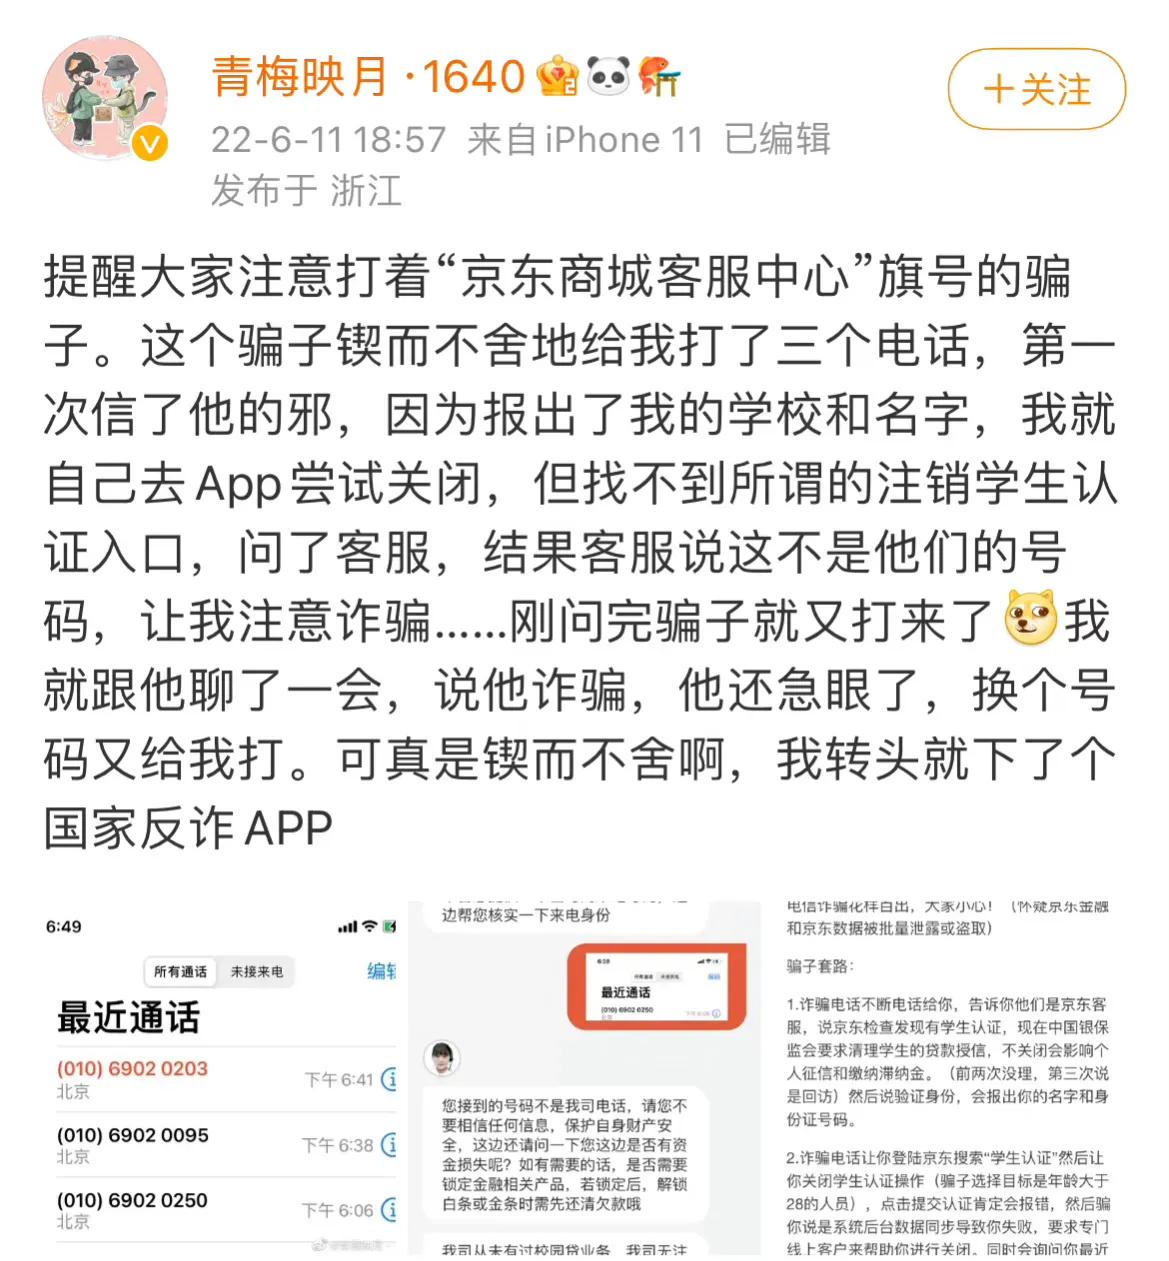 26日晚大量QQ被盗
，疑似学习通信息泄露